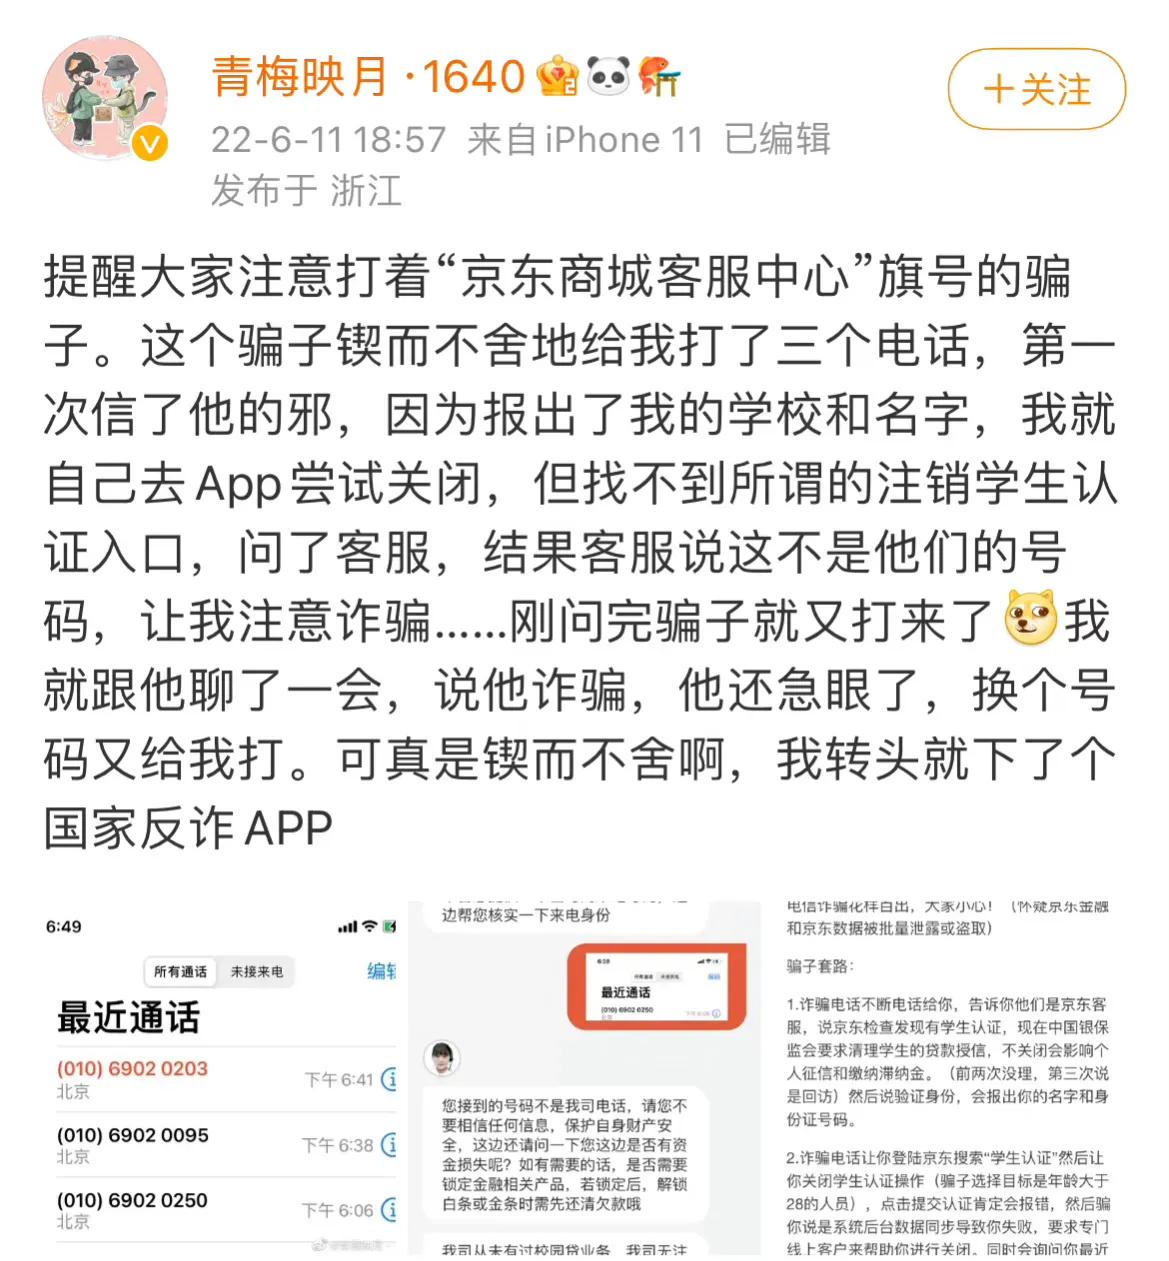 26日晚大量QQ被盗
，疑似学习通信息泄露